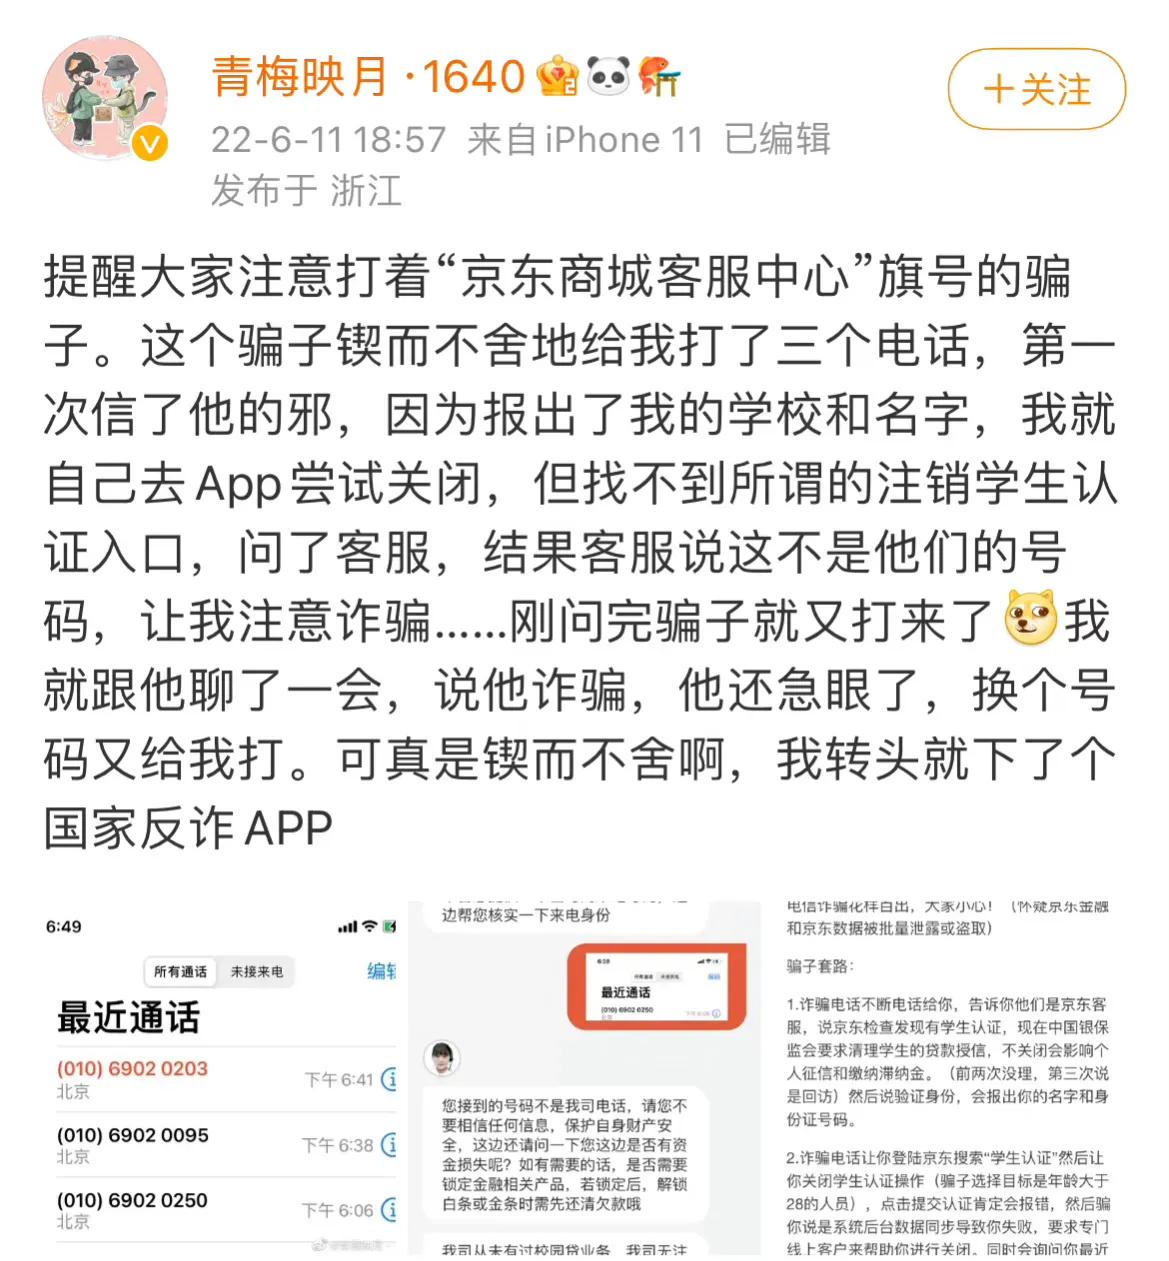 26日晚大量QQ被盗
，疑似学习通信息泄露